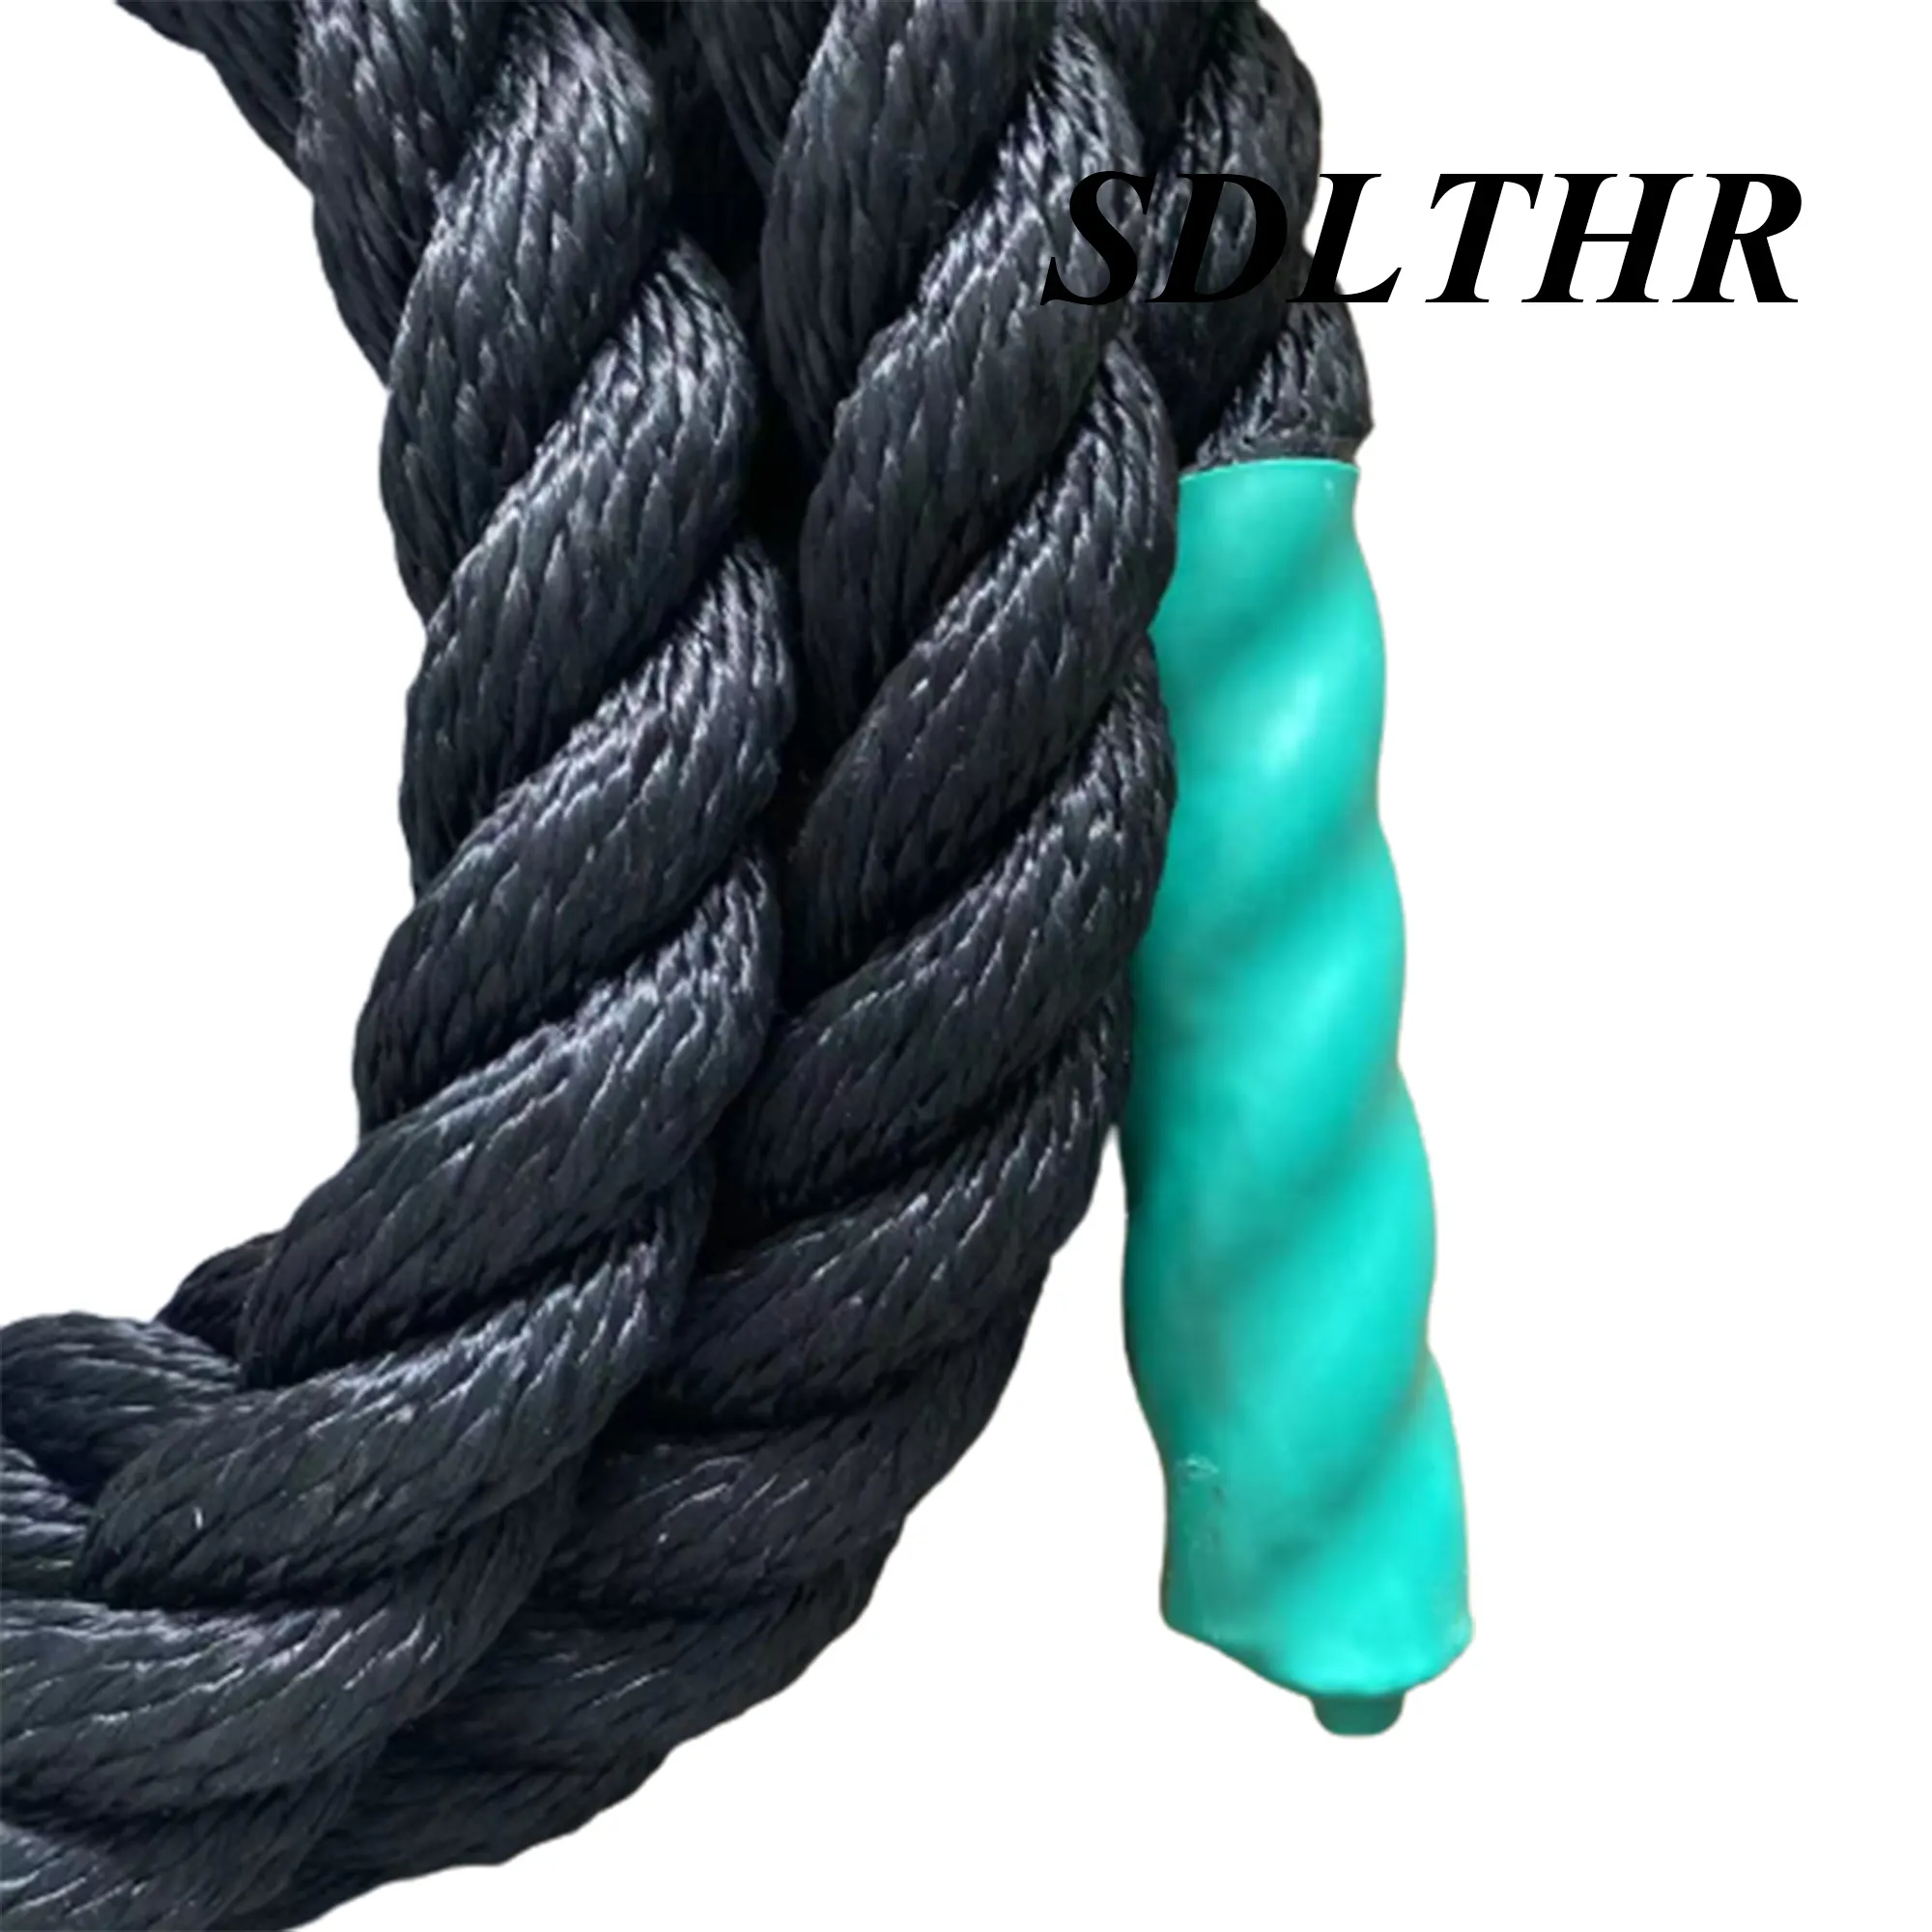 SDLTHR fabrika doğrudan tedarik spor halat naylon polyester mücadele halat